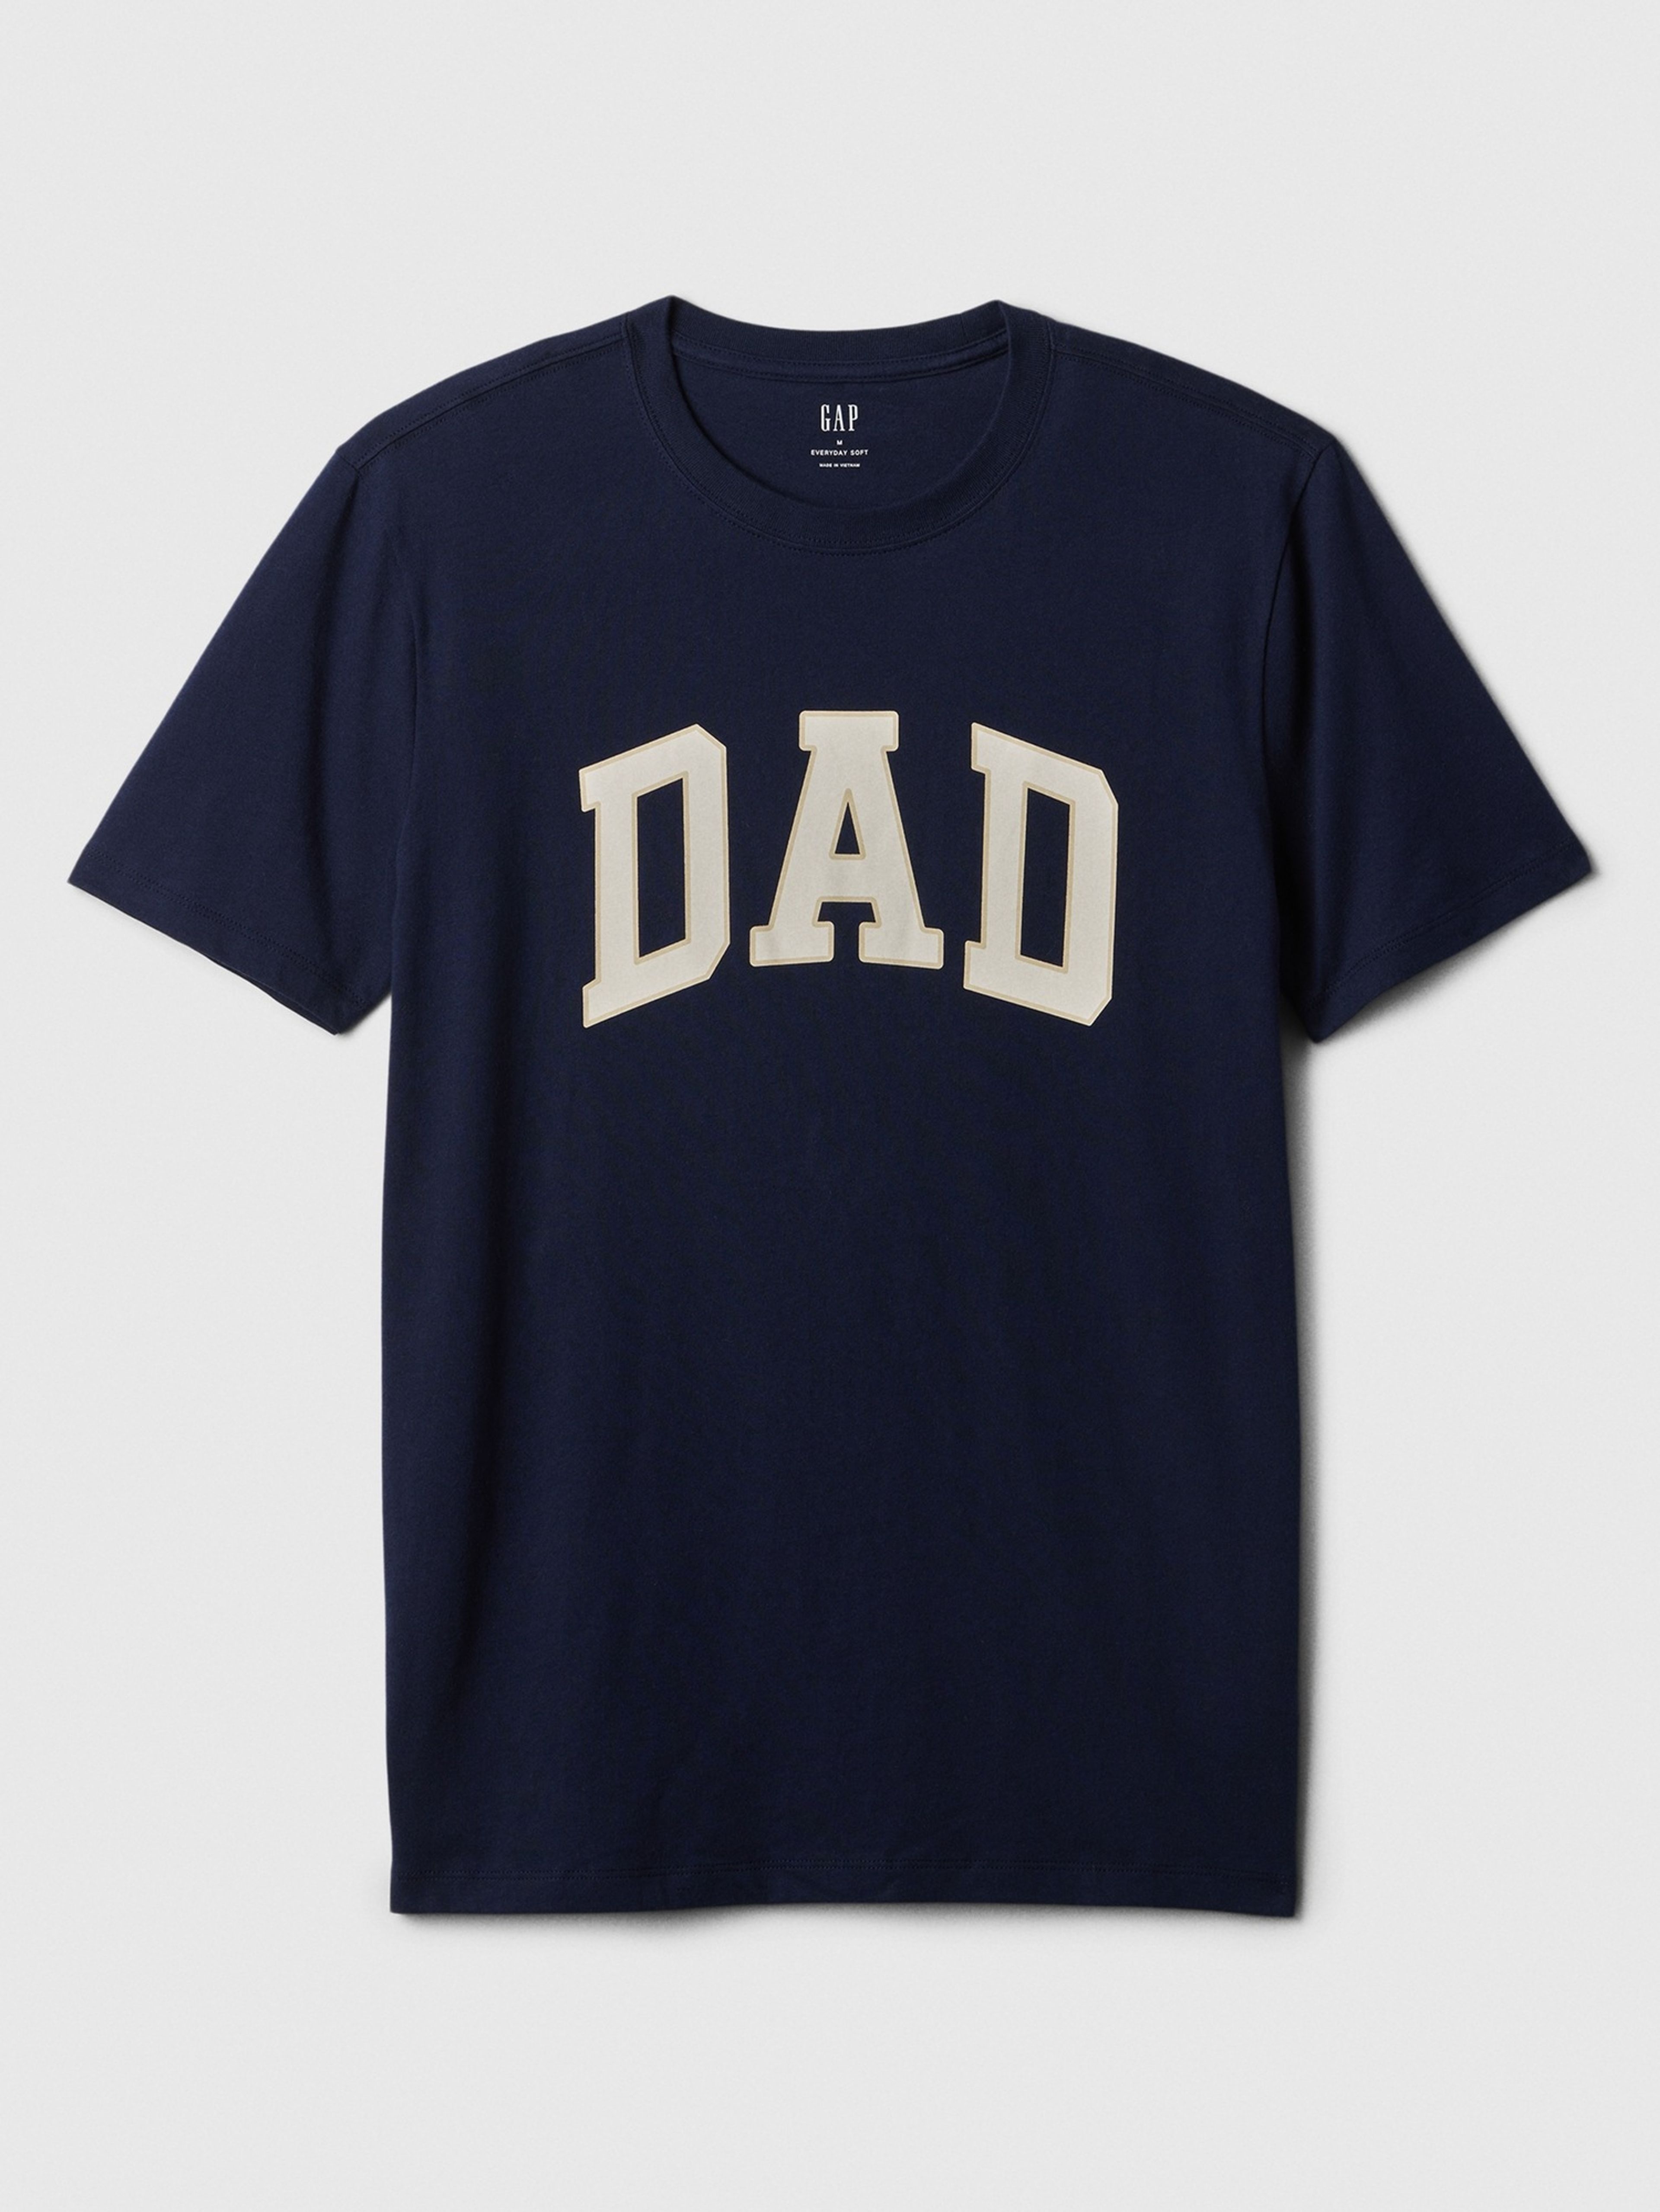 T-Shirt mit DAD-Aufdruck